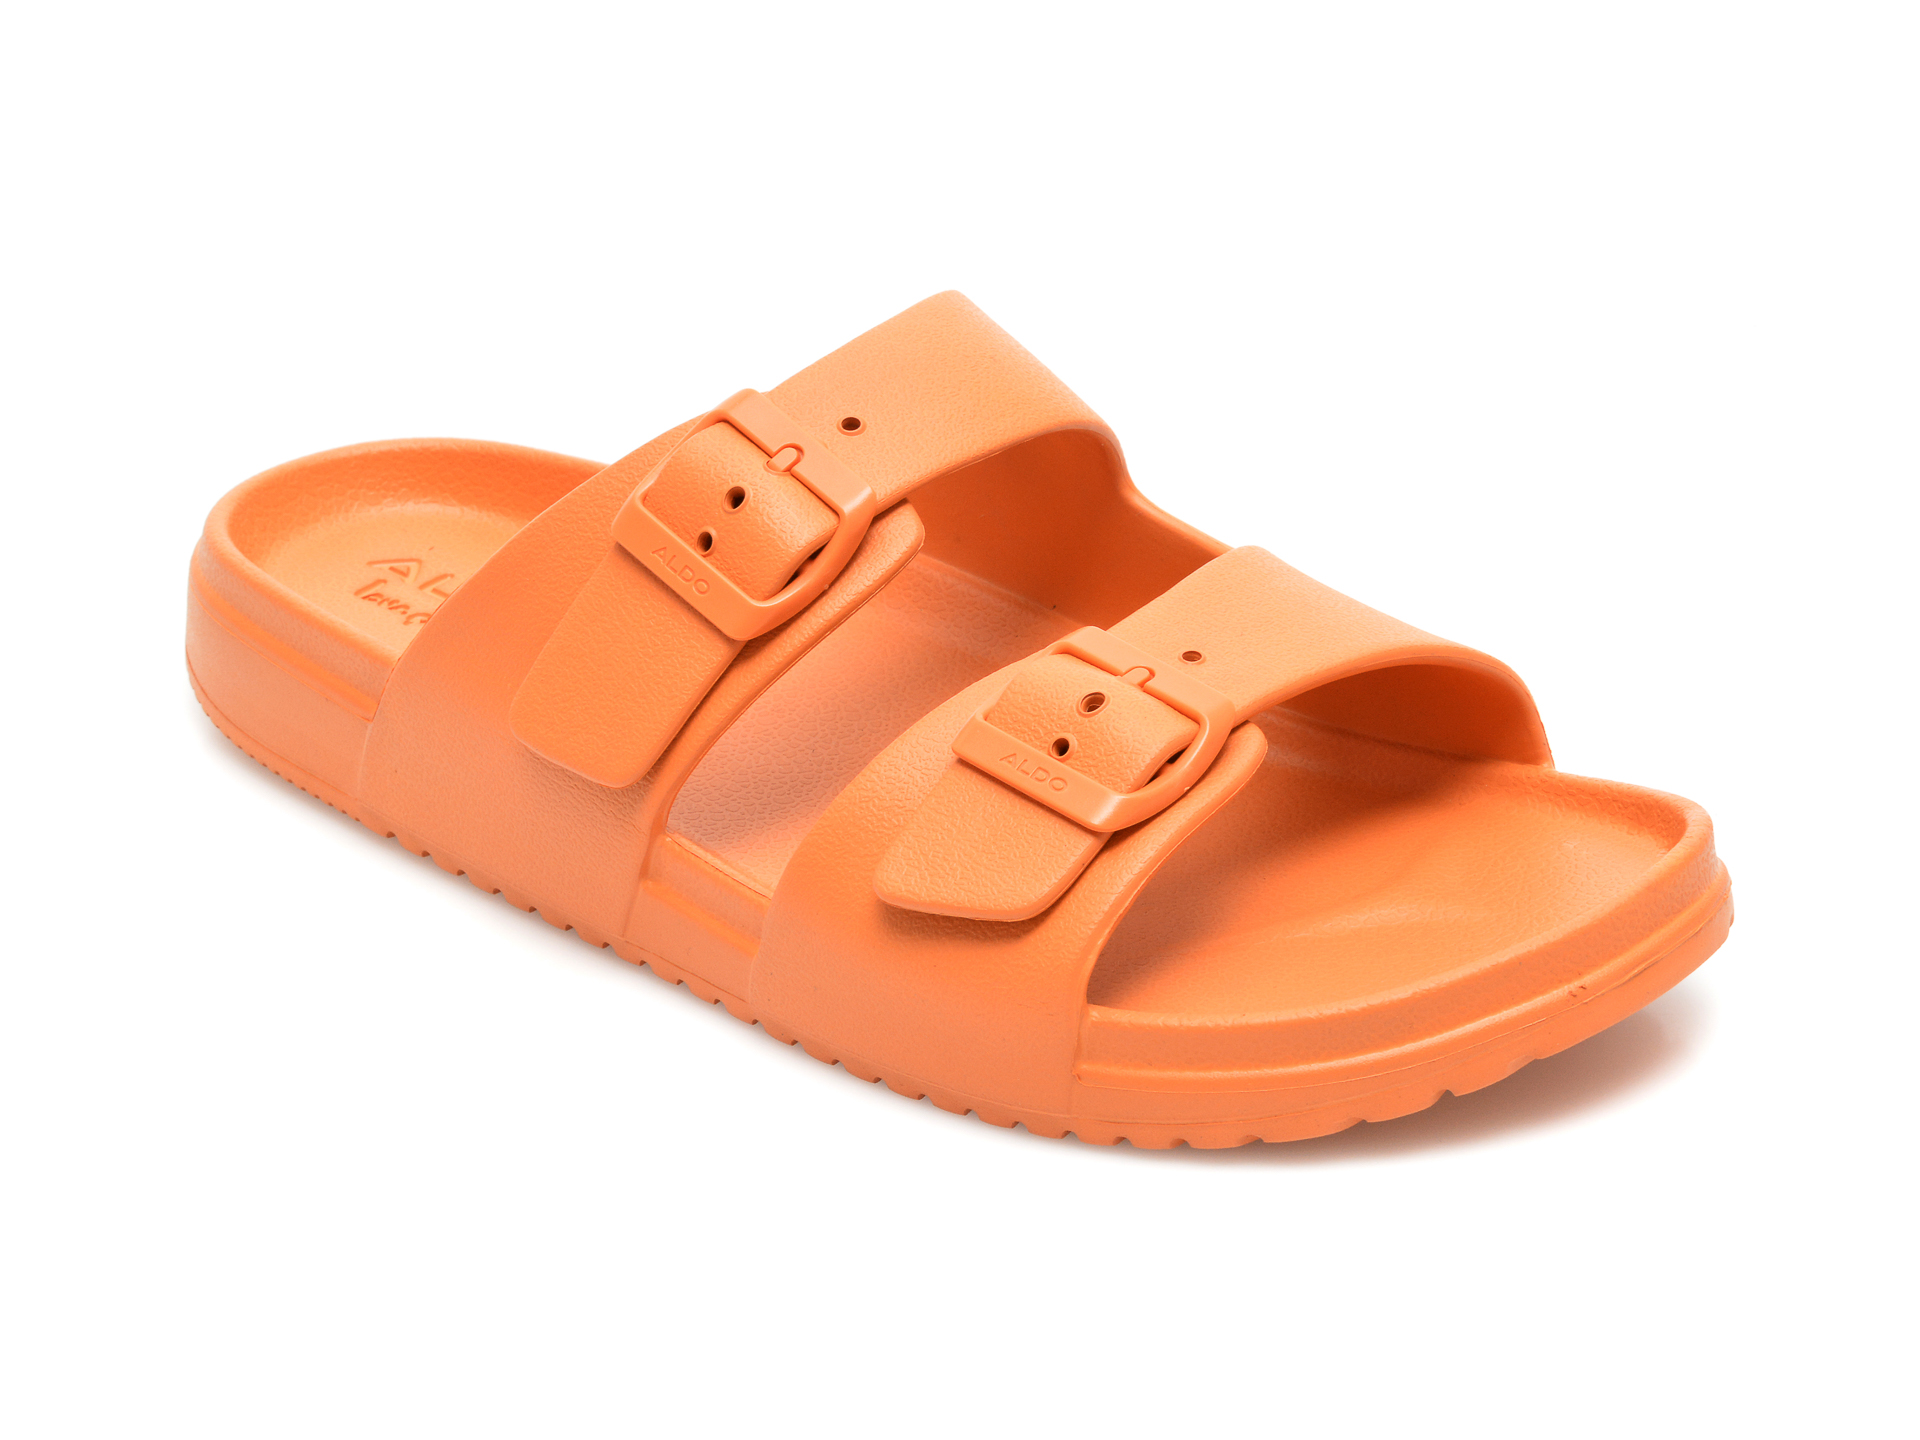 Papuci ALDO portocalii, Hideo800, din pvc Aldo